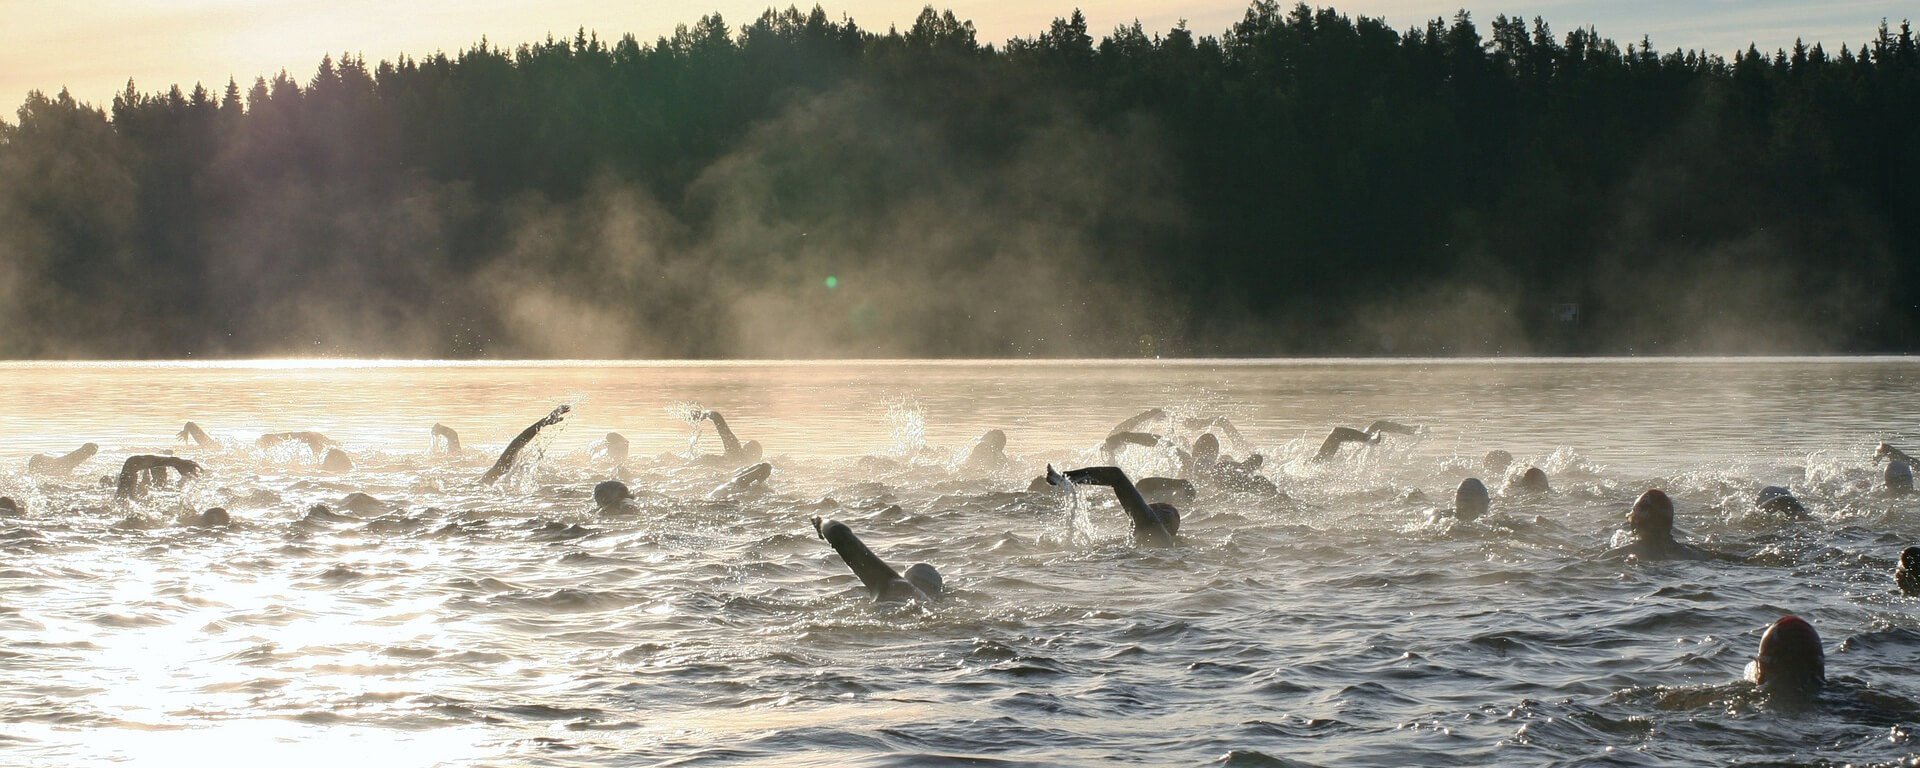 Swimrun - från världen till Sverige